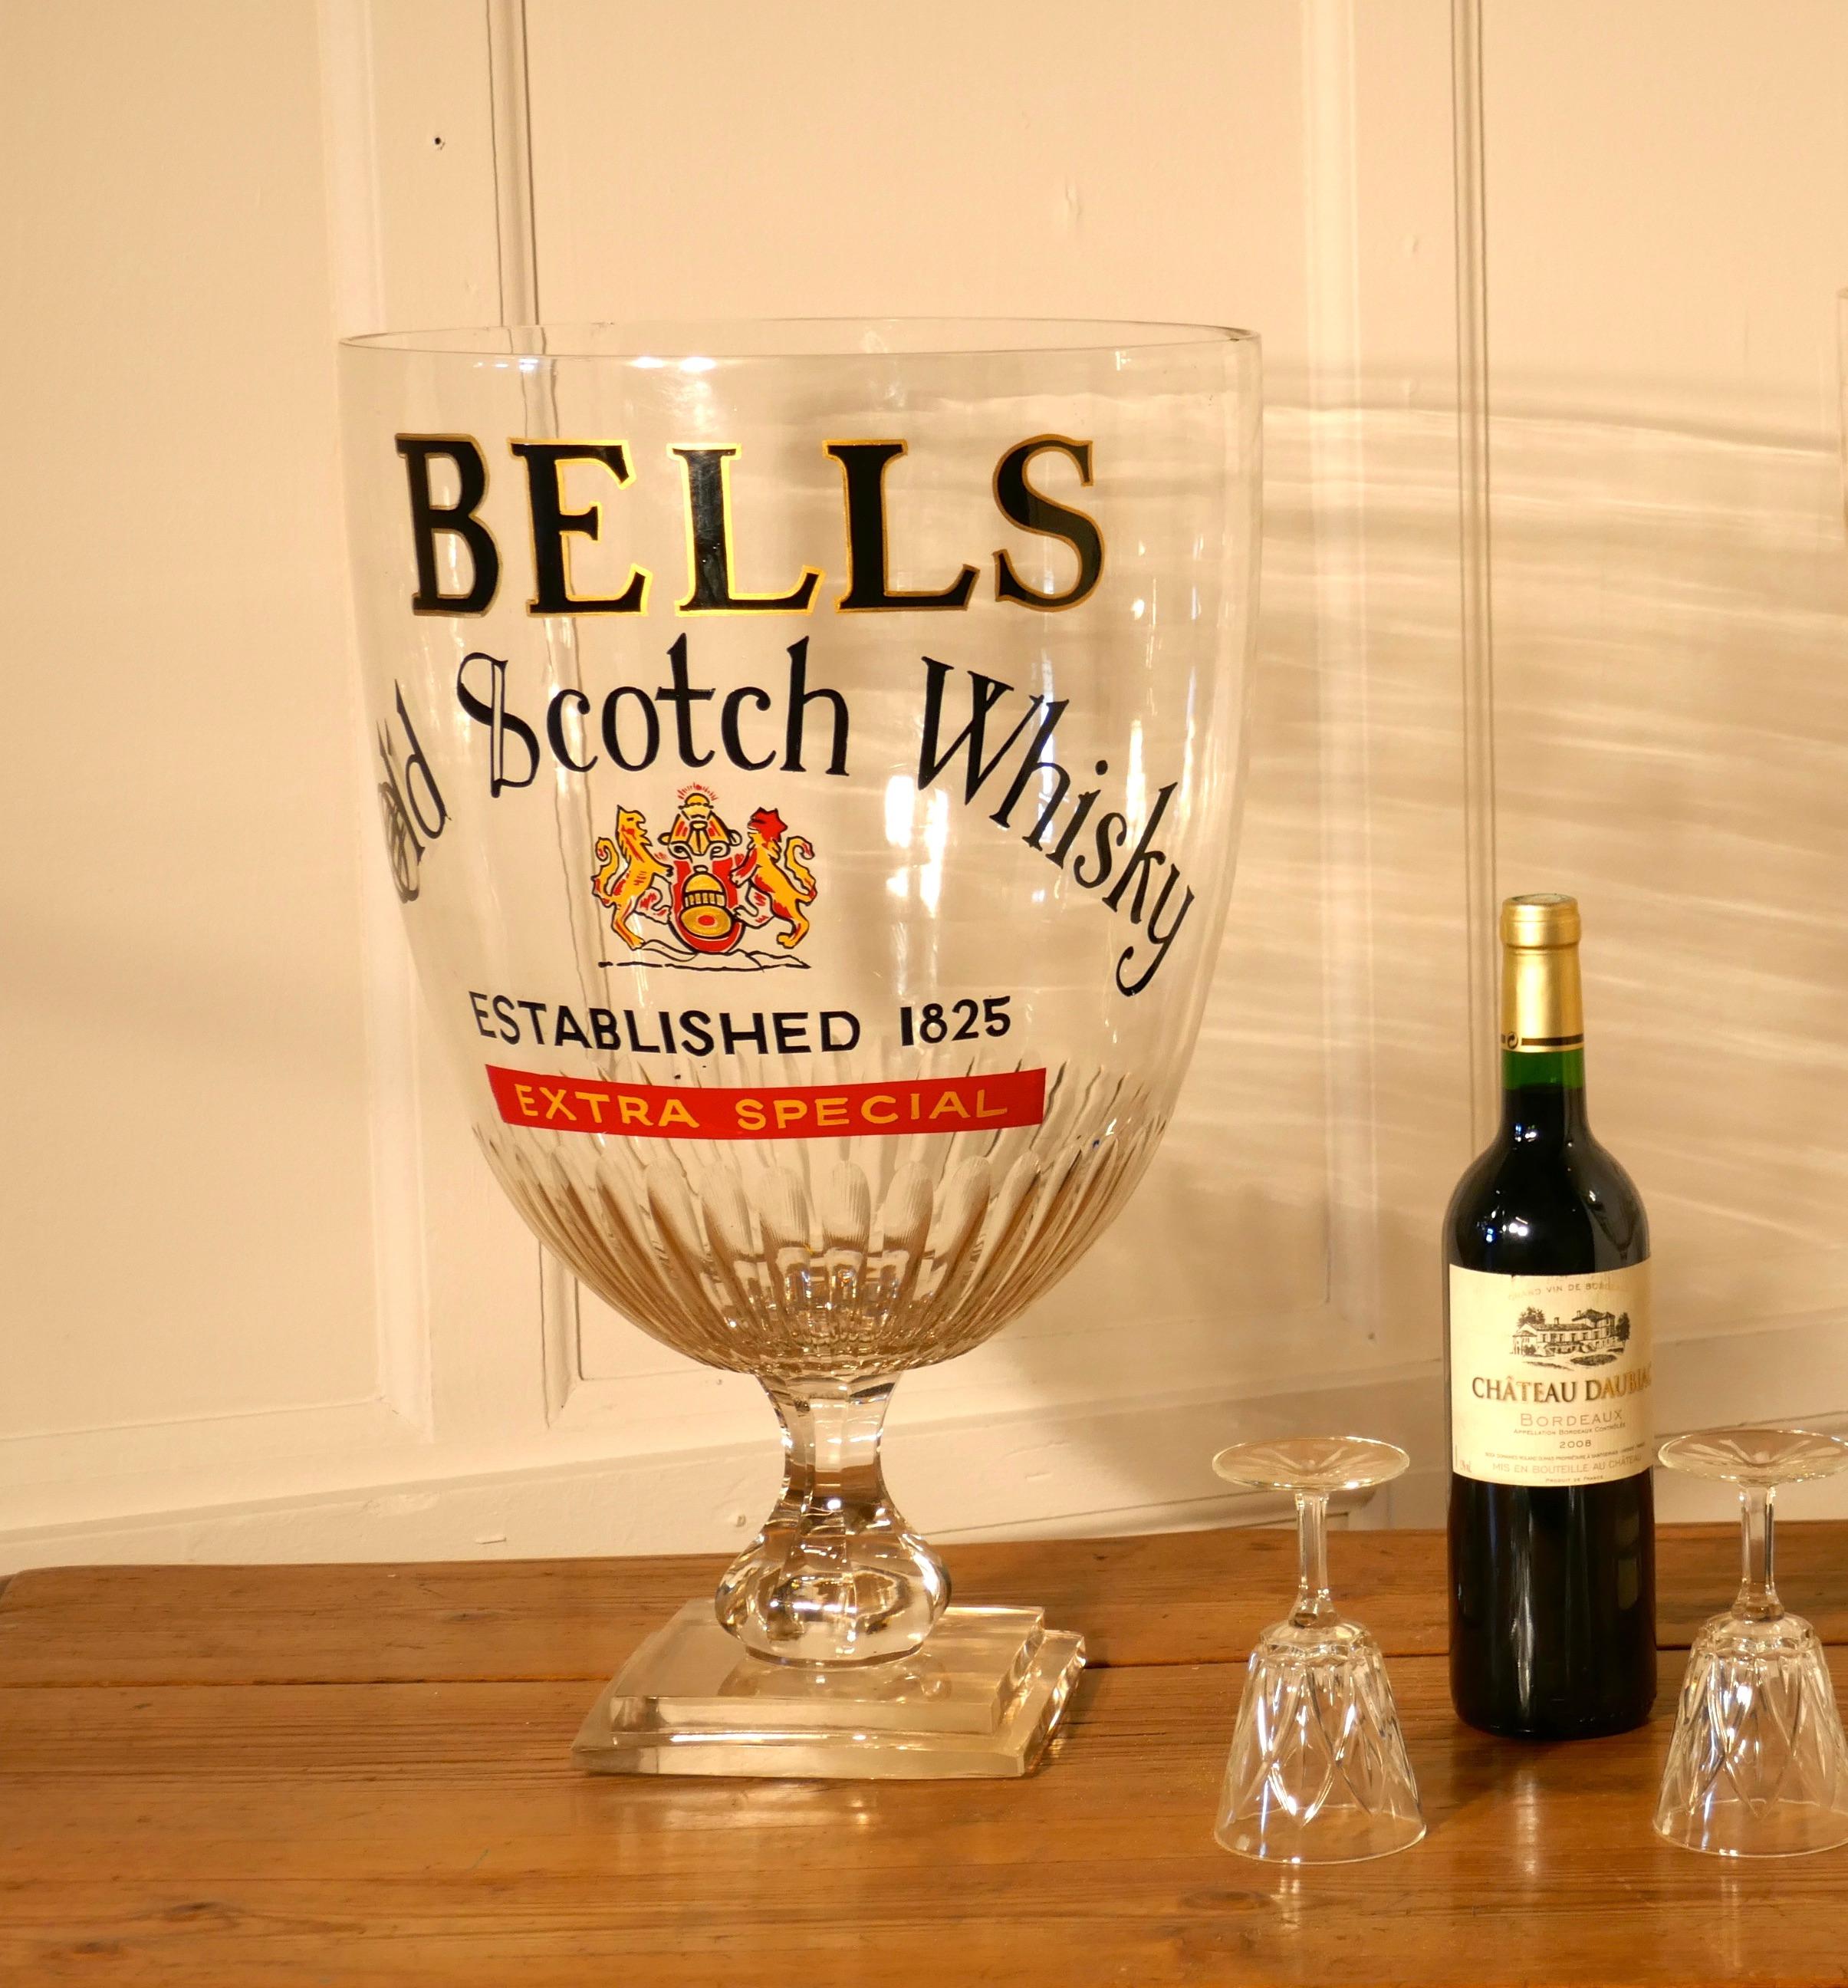 Giant Advertising Presentation, Glaskessel für Glocken, Scotch Whisky für Glocken


Dies ist ein übergroßes Glas, das für die Werbung in Kneipen oder Bars gedacht ist. 
Das Glas steht auf einem dicken gestuften quadratischen Sockel, es hat eine